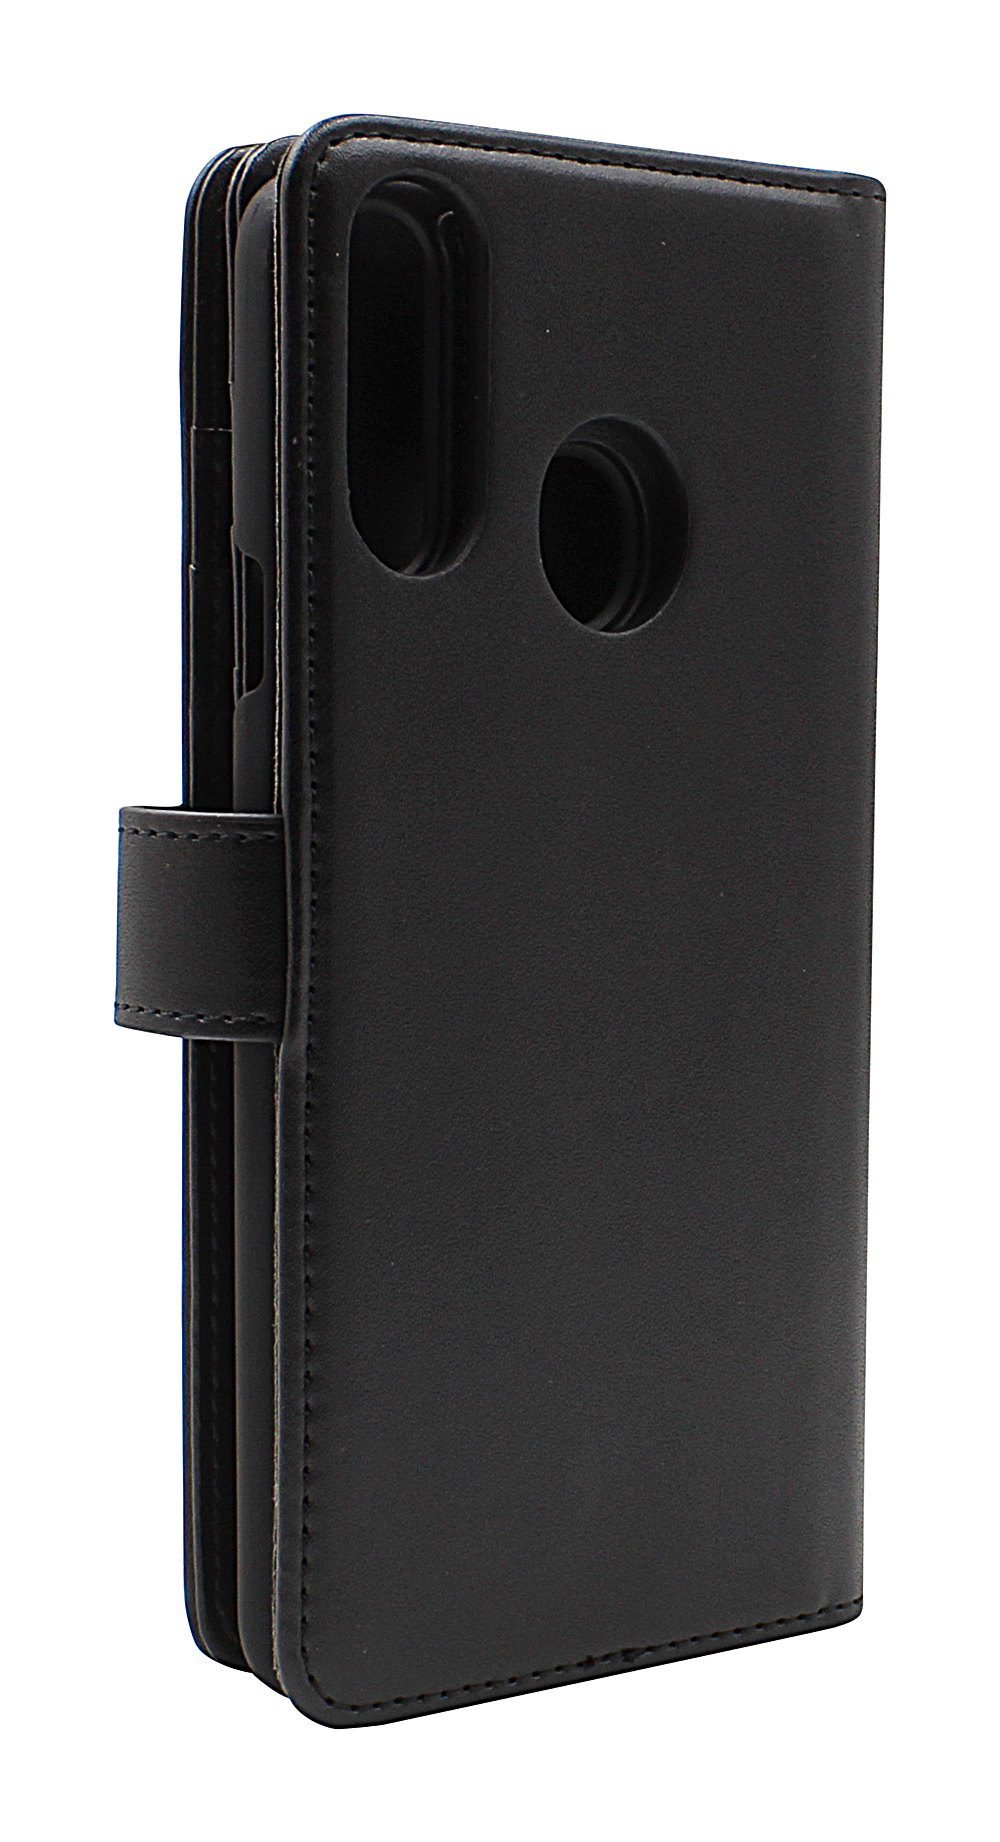 Skimblocker XL Magnet Wallet Samsung Galaxy A20s (A207F/DS)